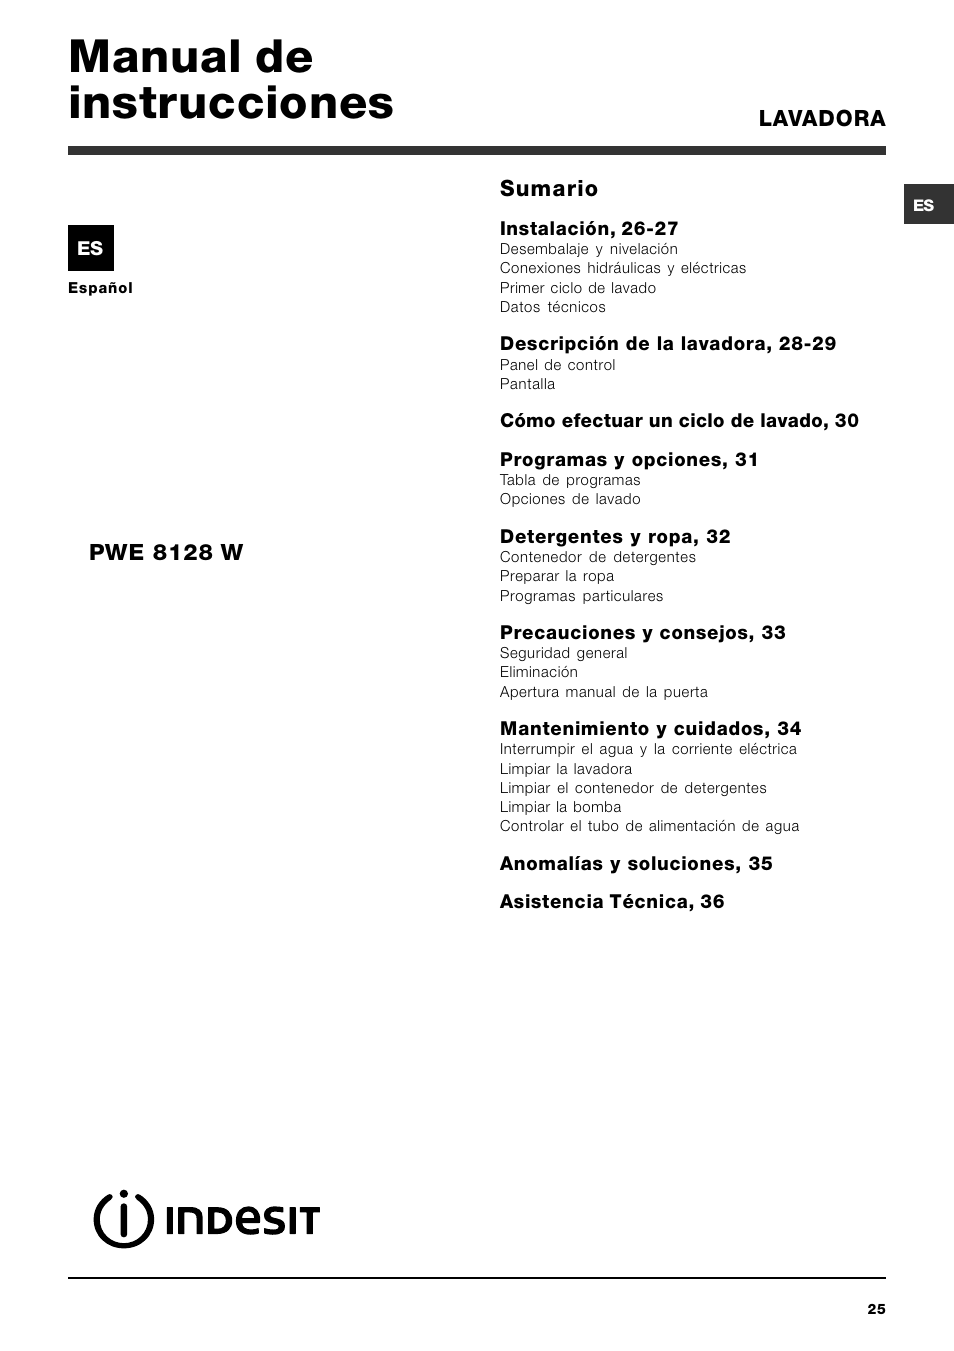 Manual de instrucciones, Lavadora sumario, Pwe 8128 w | Indesit PWE 8128 W  User Manual | Page 25 / 48 | Original mode